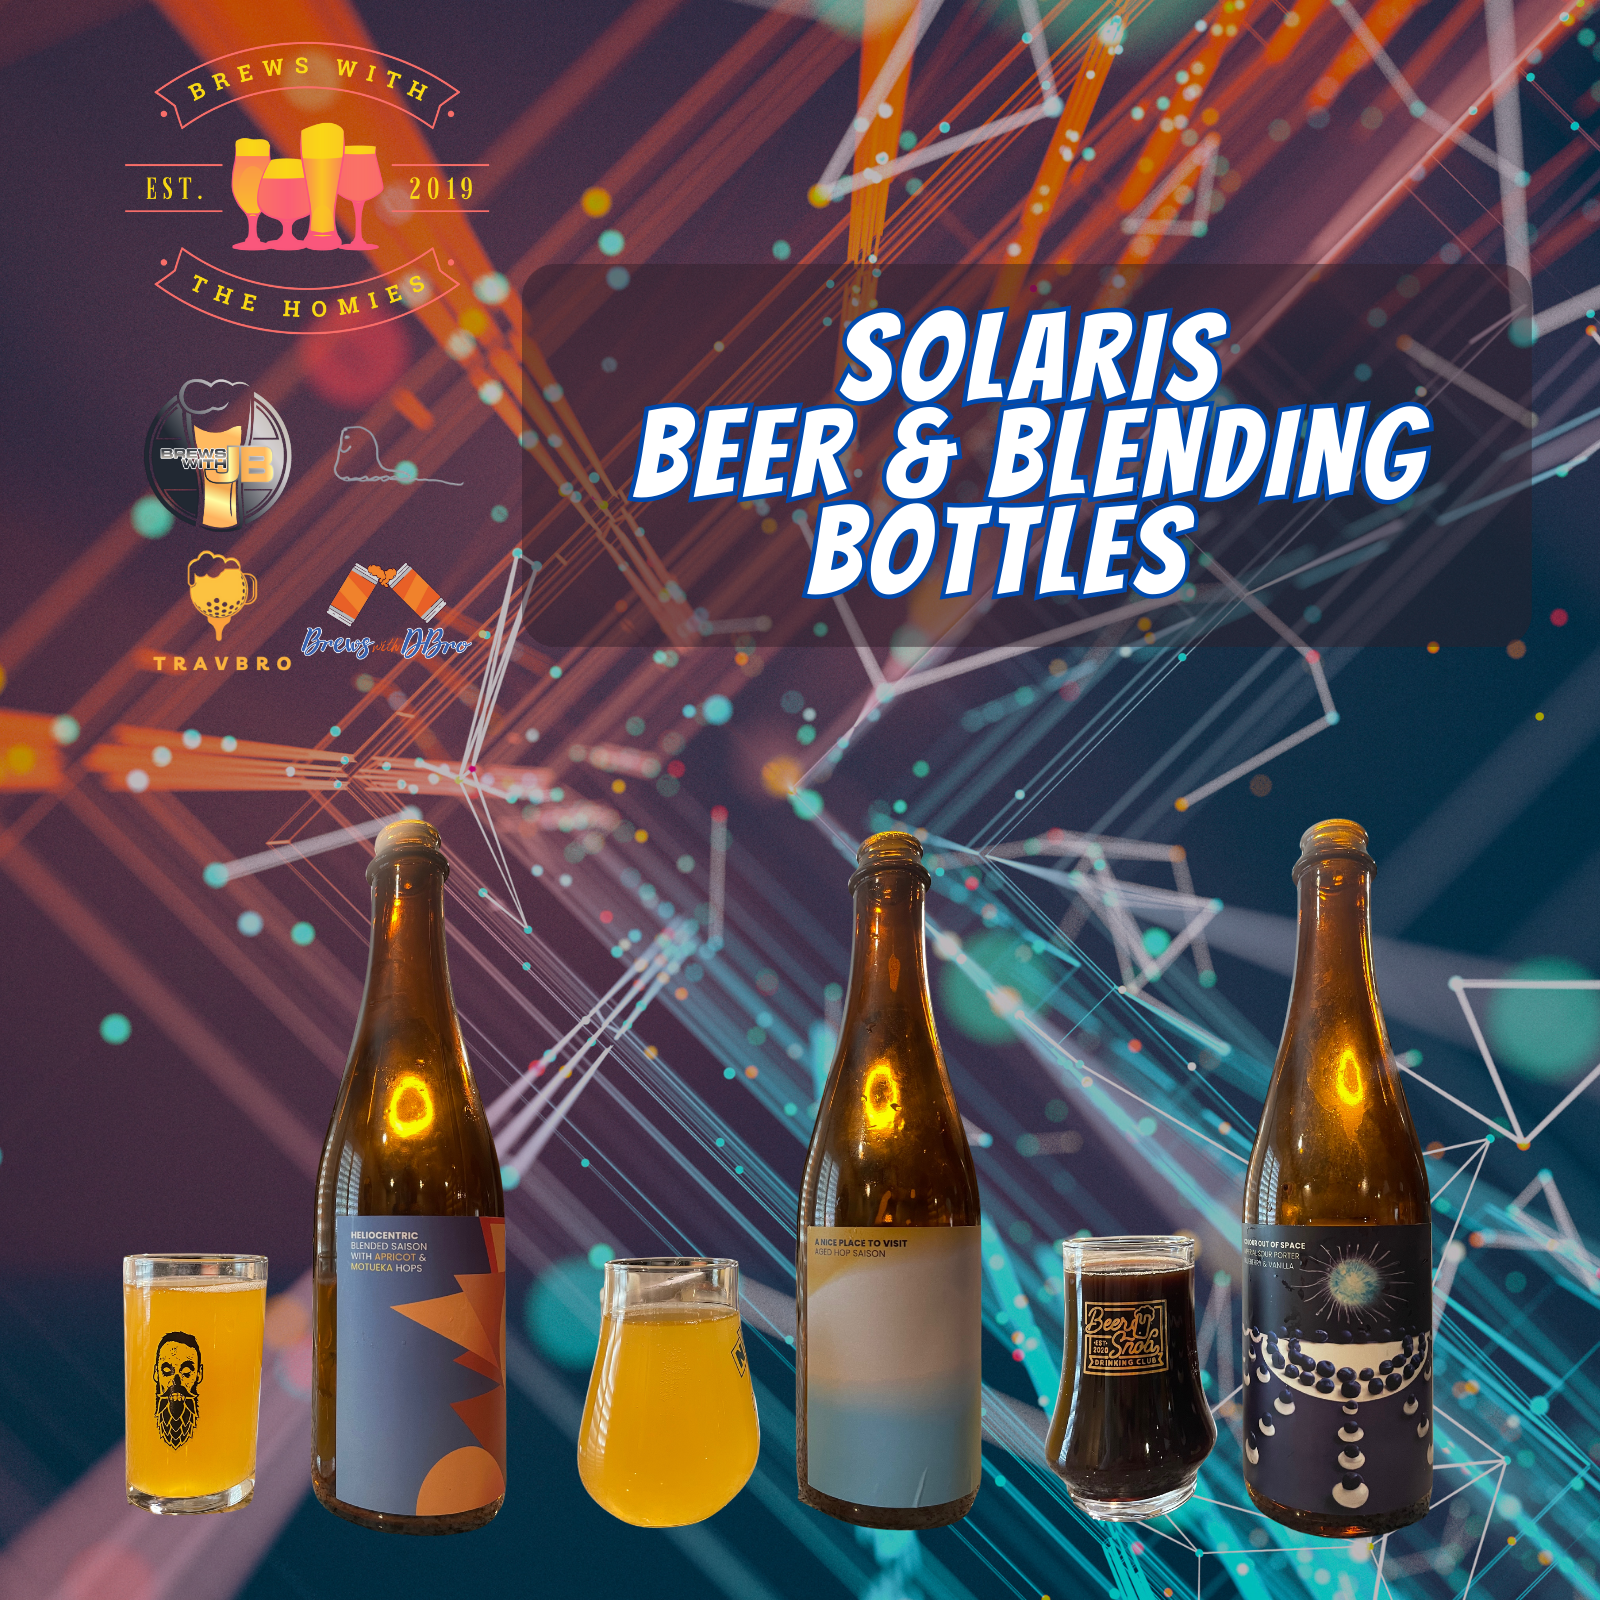 Solaris Beer & Blending Bottles